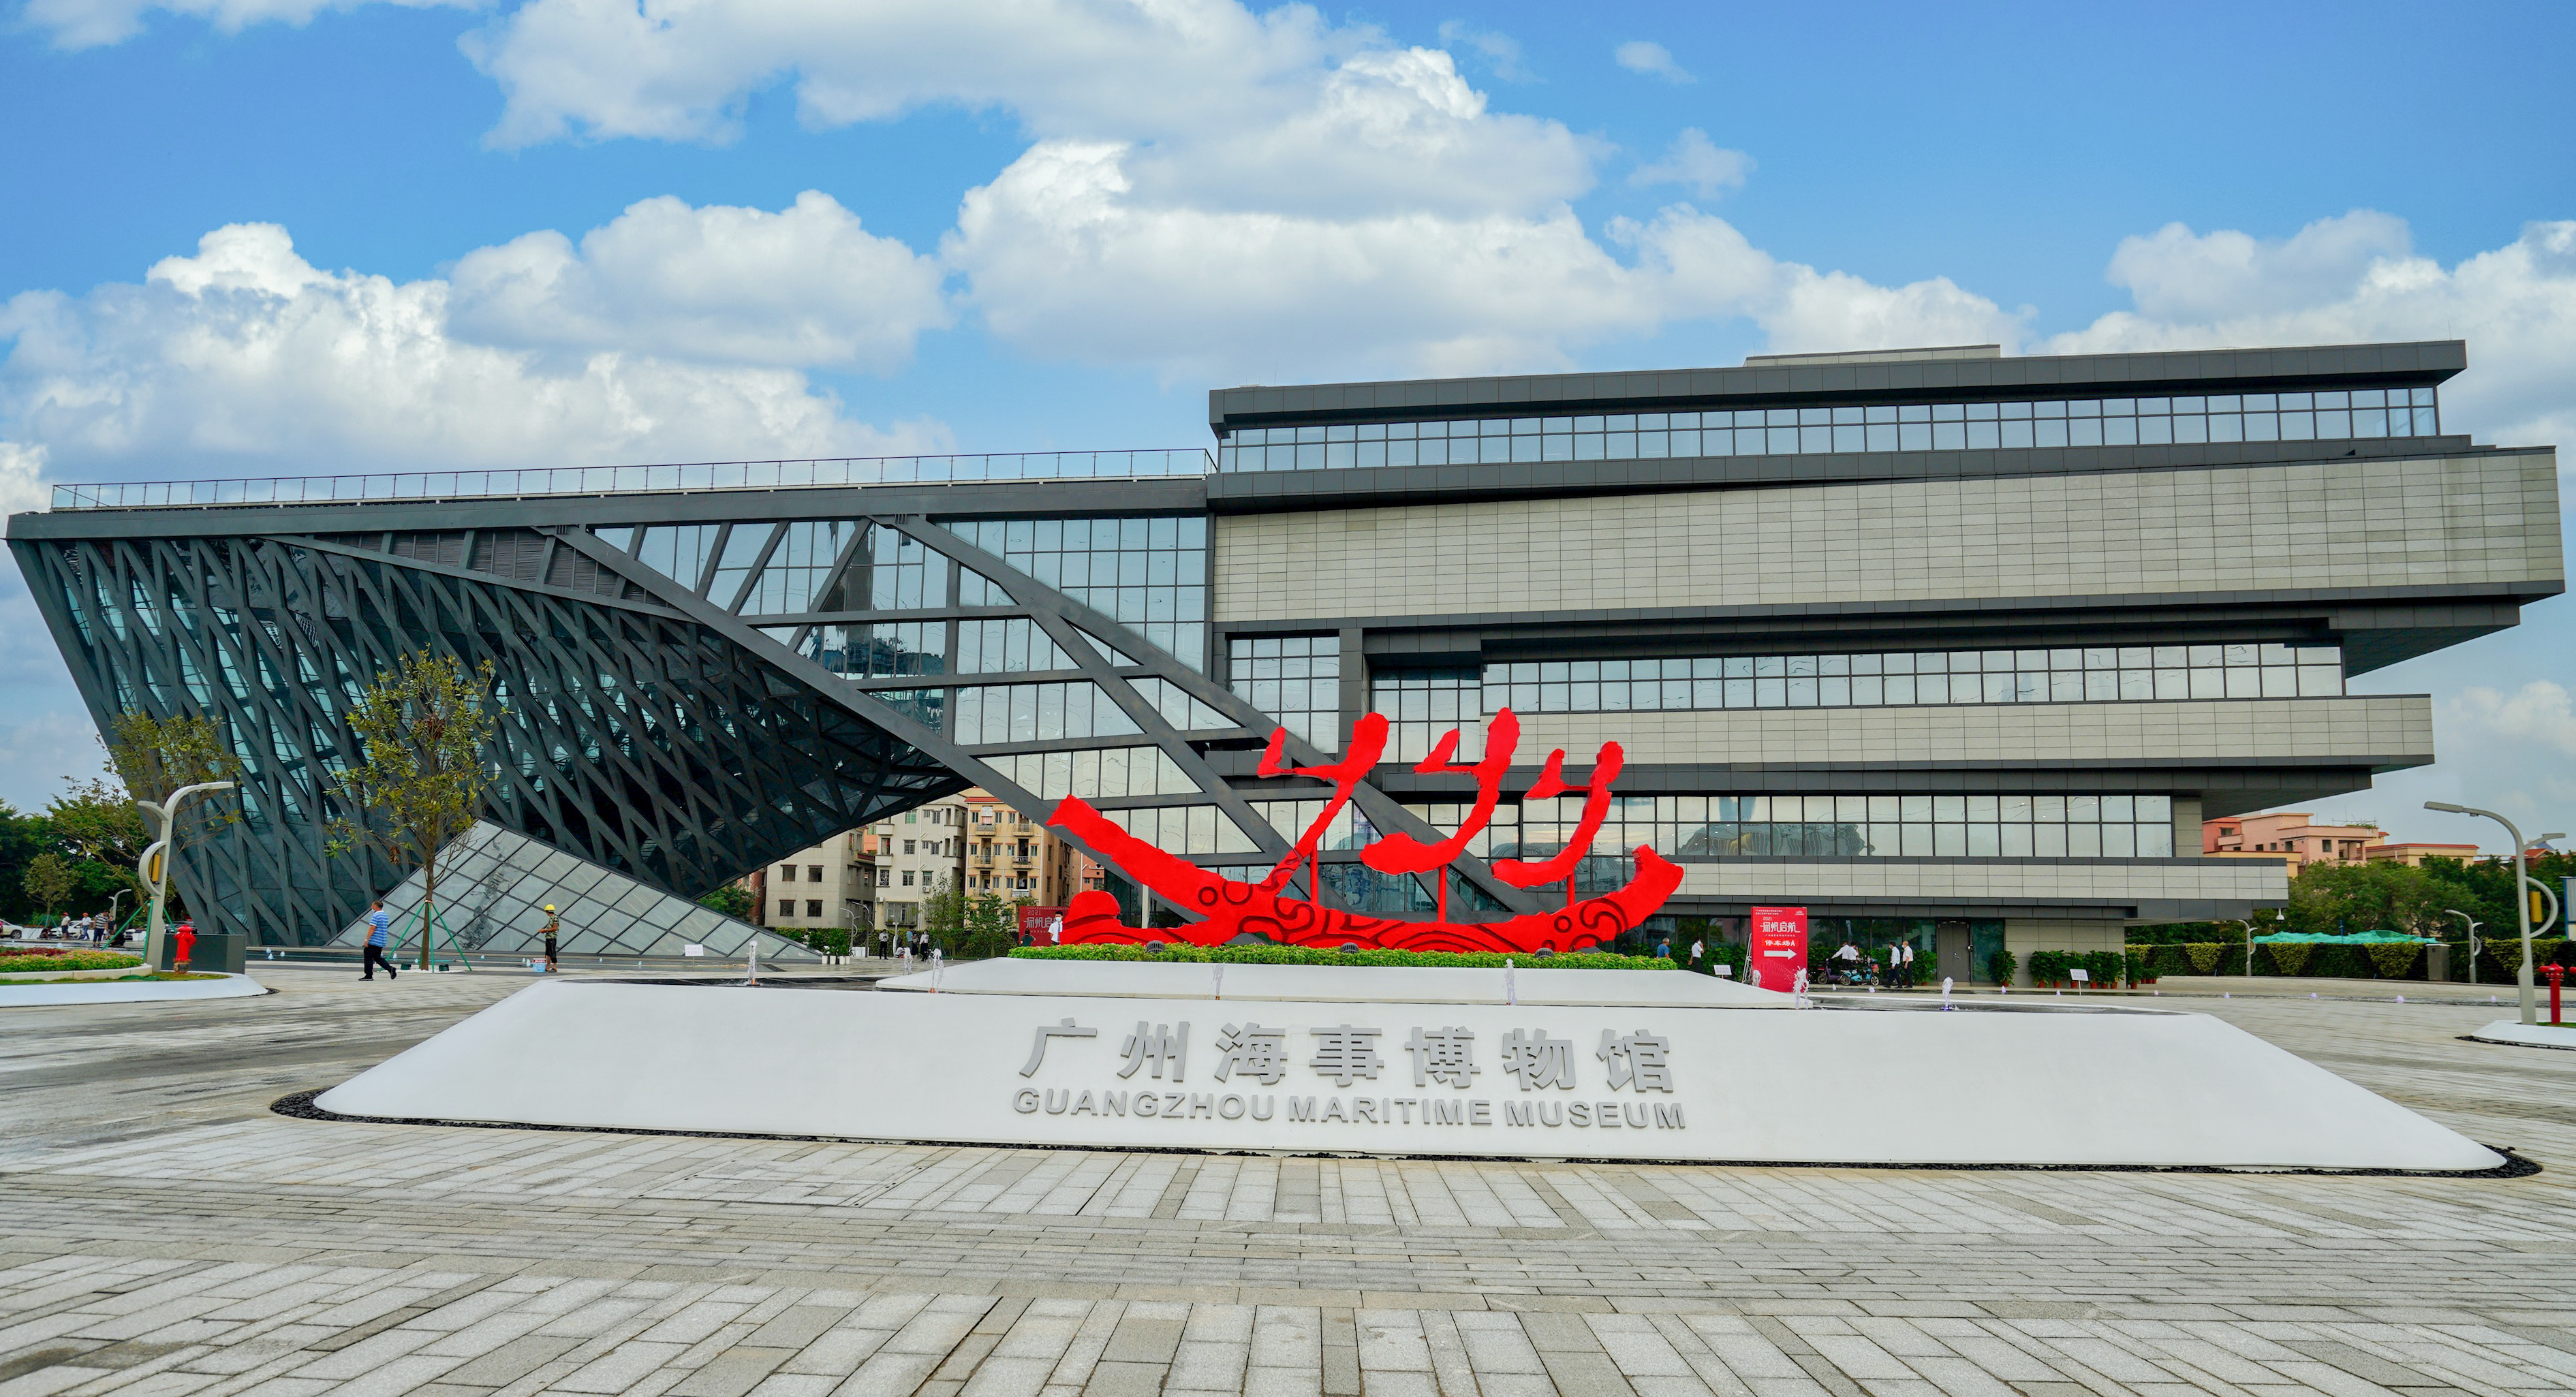 广州海事博物馆